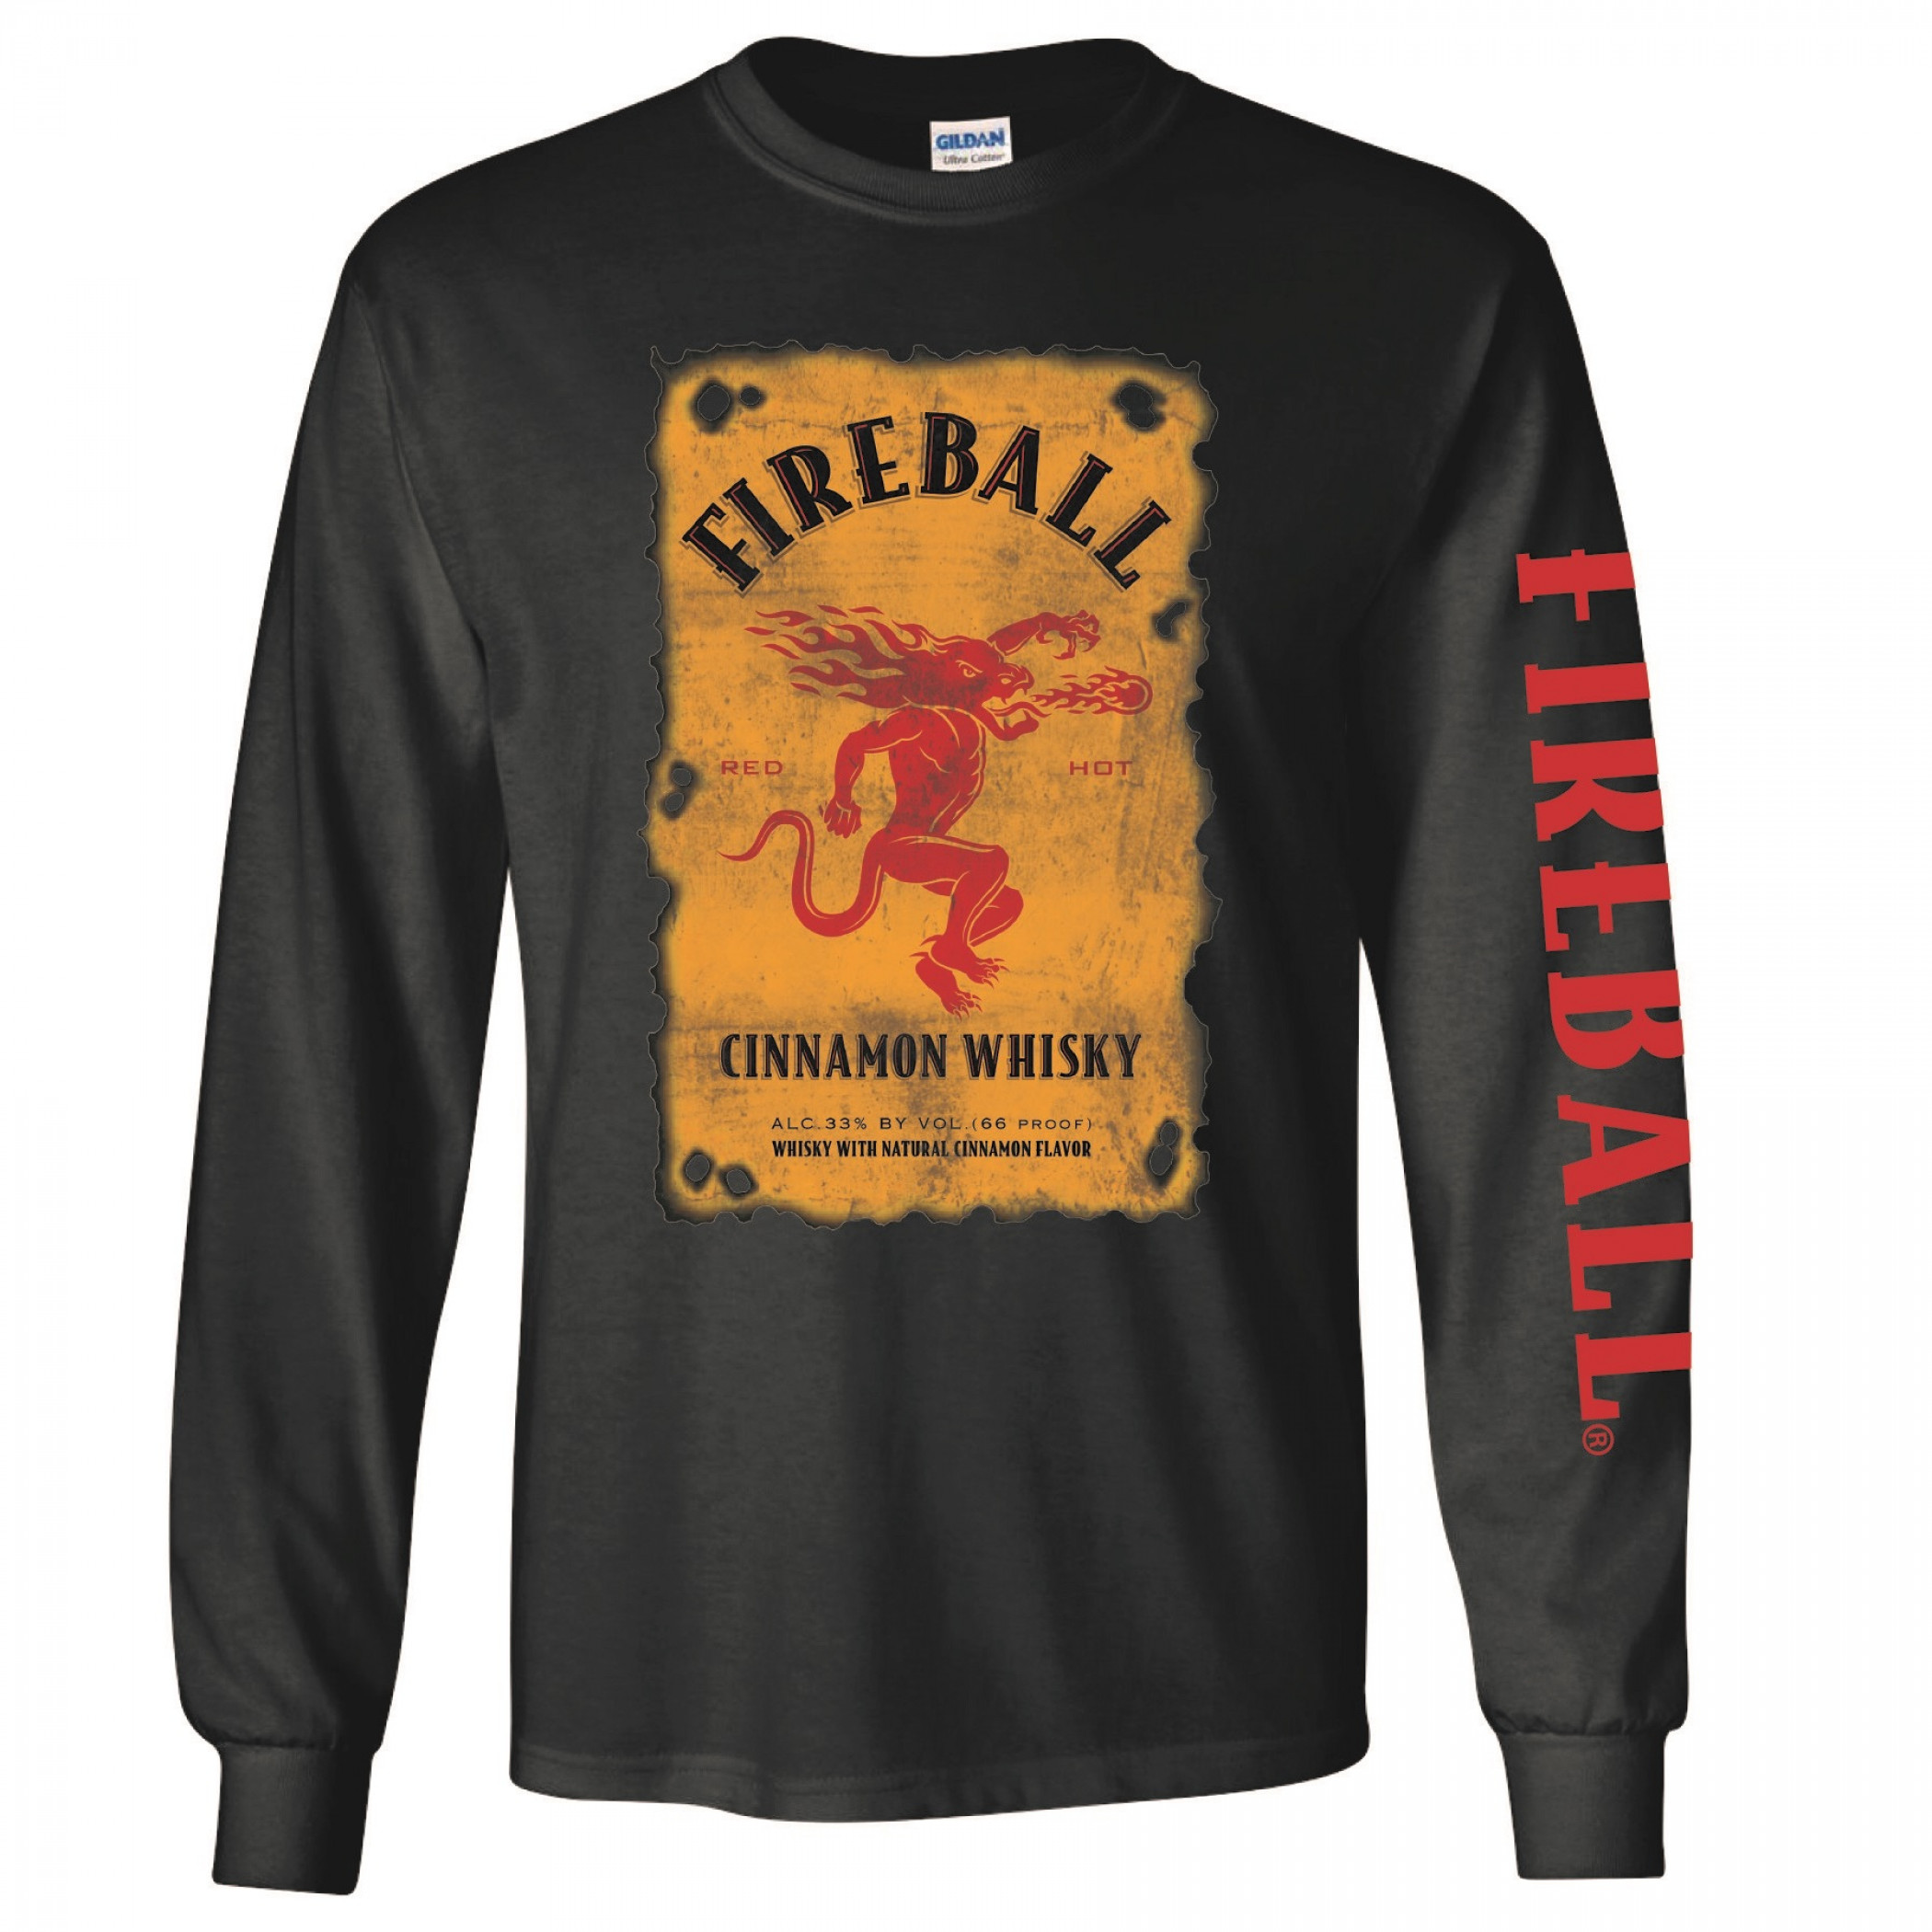 Fireball Bottle Label Long Sleeve Shirt